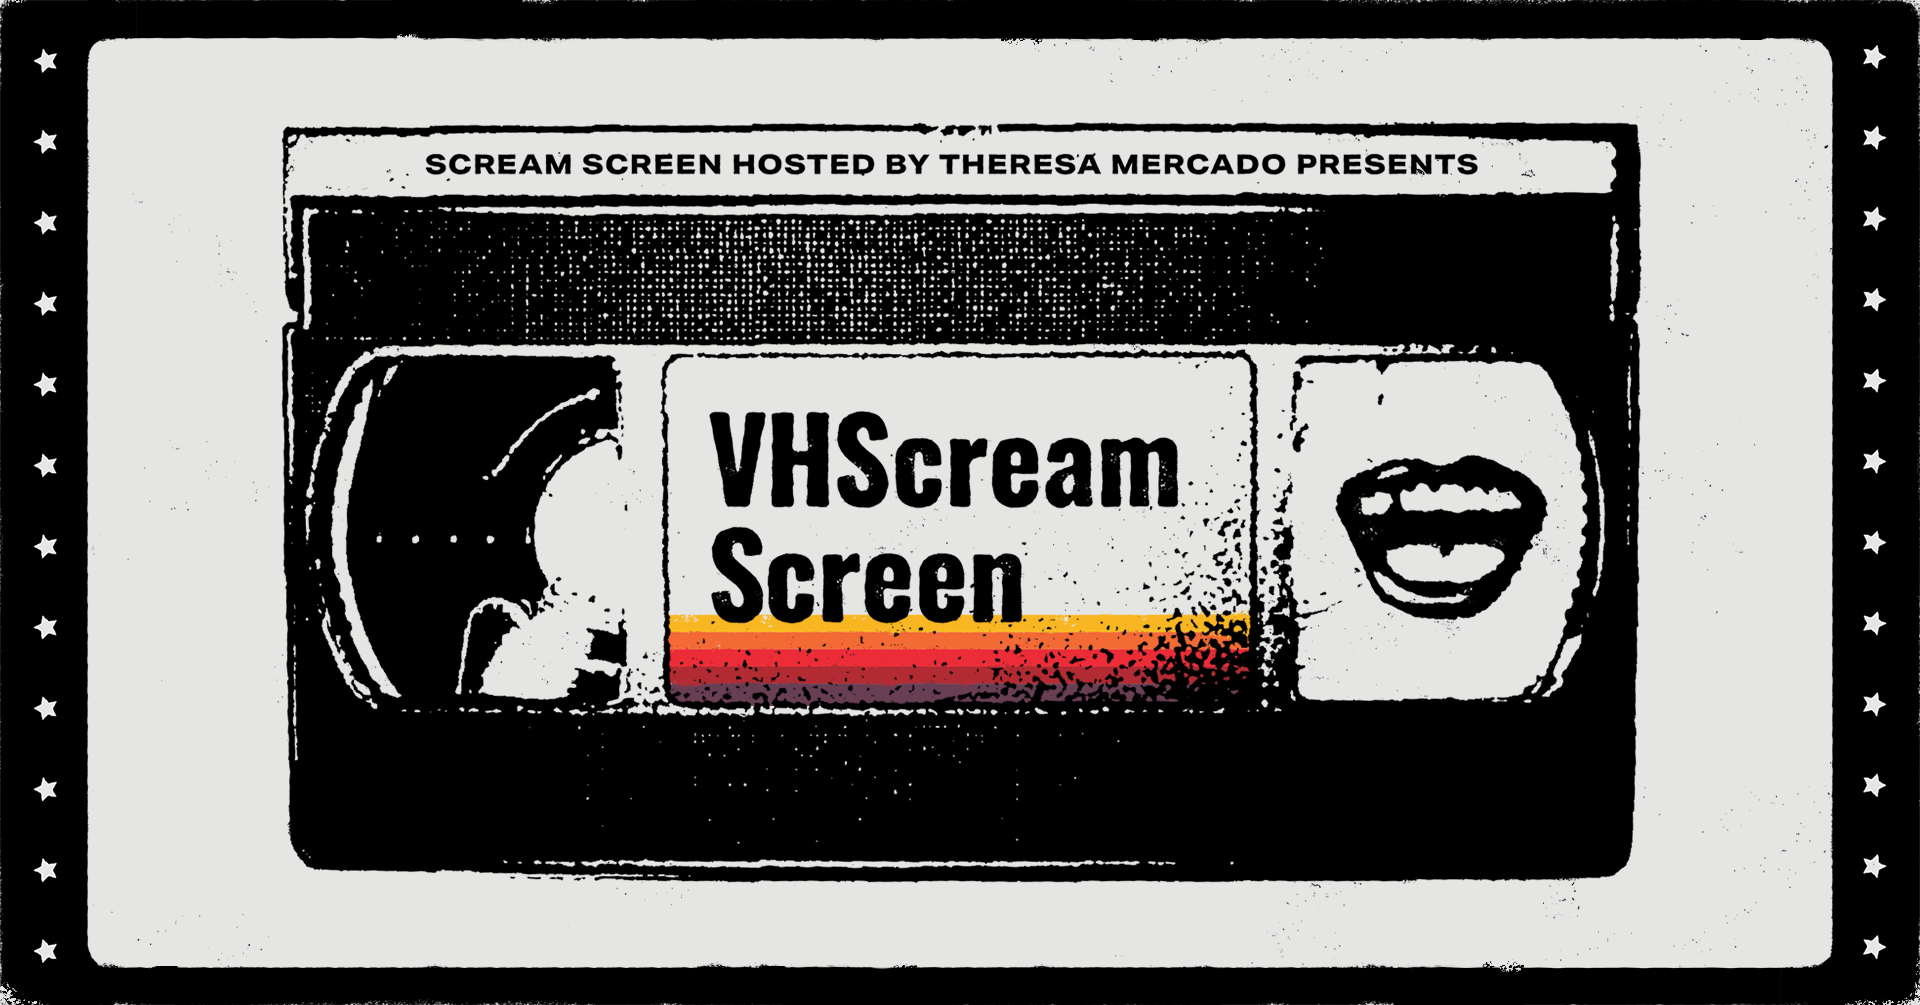 VHScream Screen!